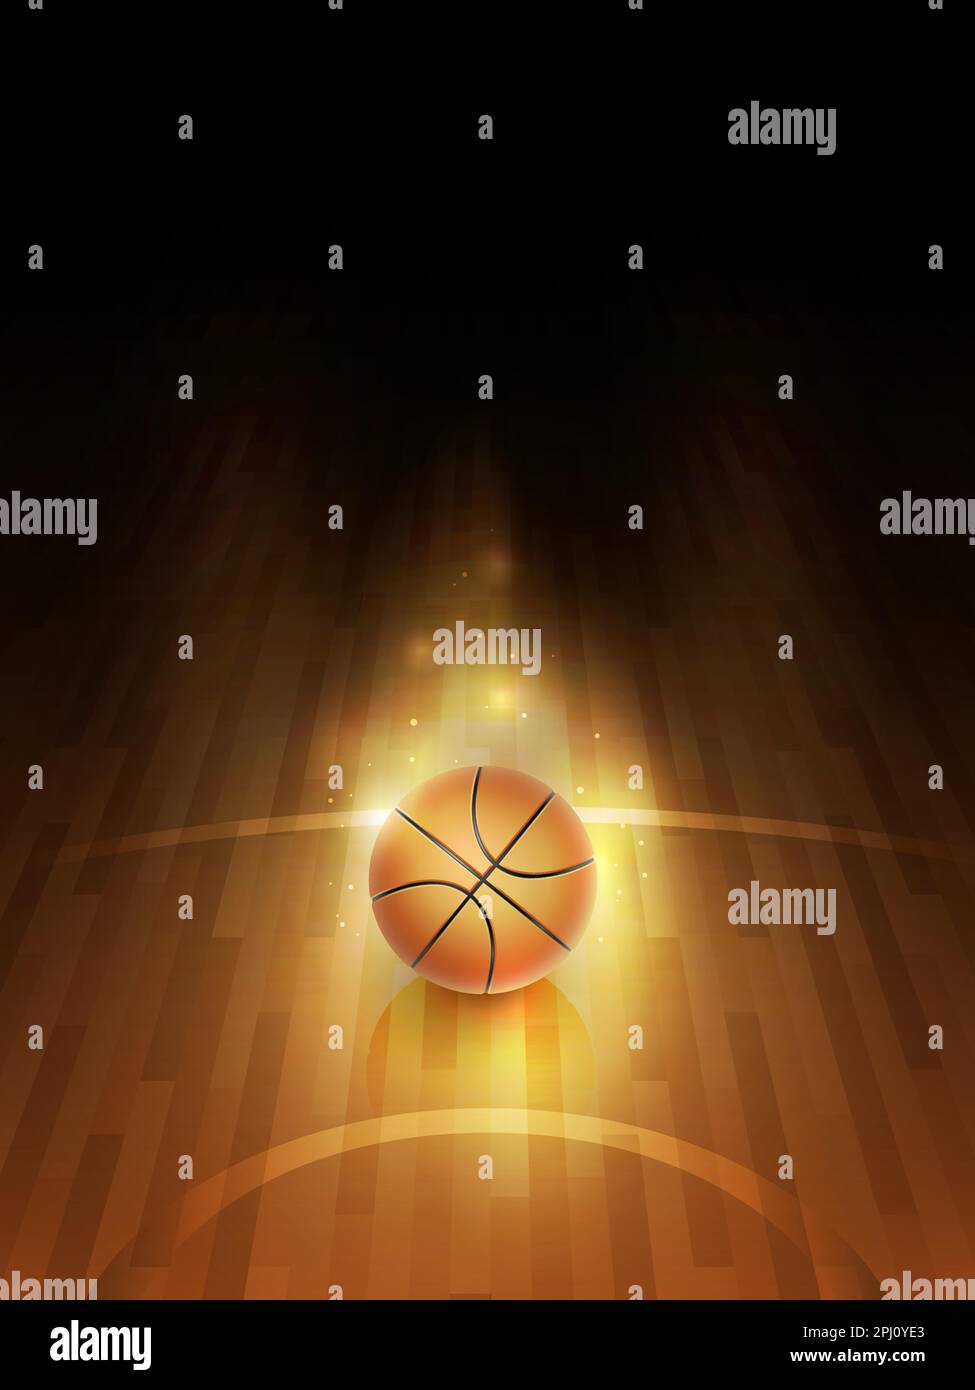 Basketballball auf dem hellen Parkett. Darstellung der Sportausrüstung. Einzelne orangefarbene Kugel im hellen Punkt und im dunklen Hintergrund. Stock Vektor